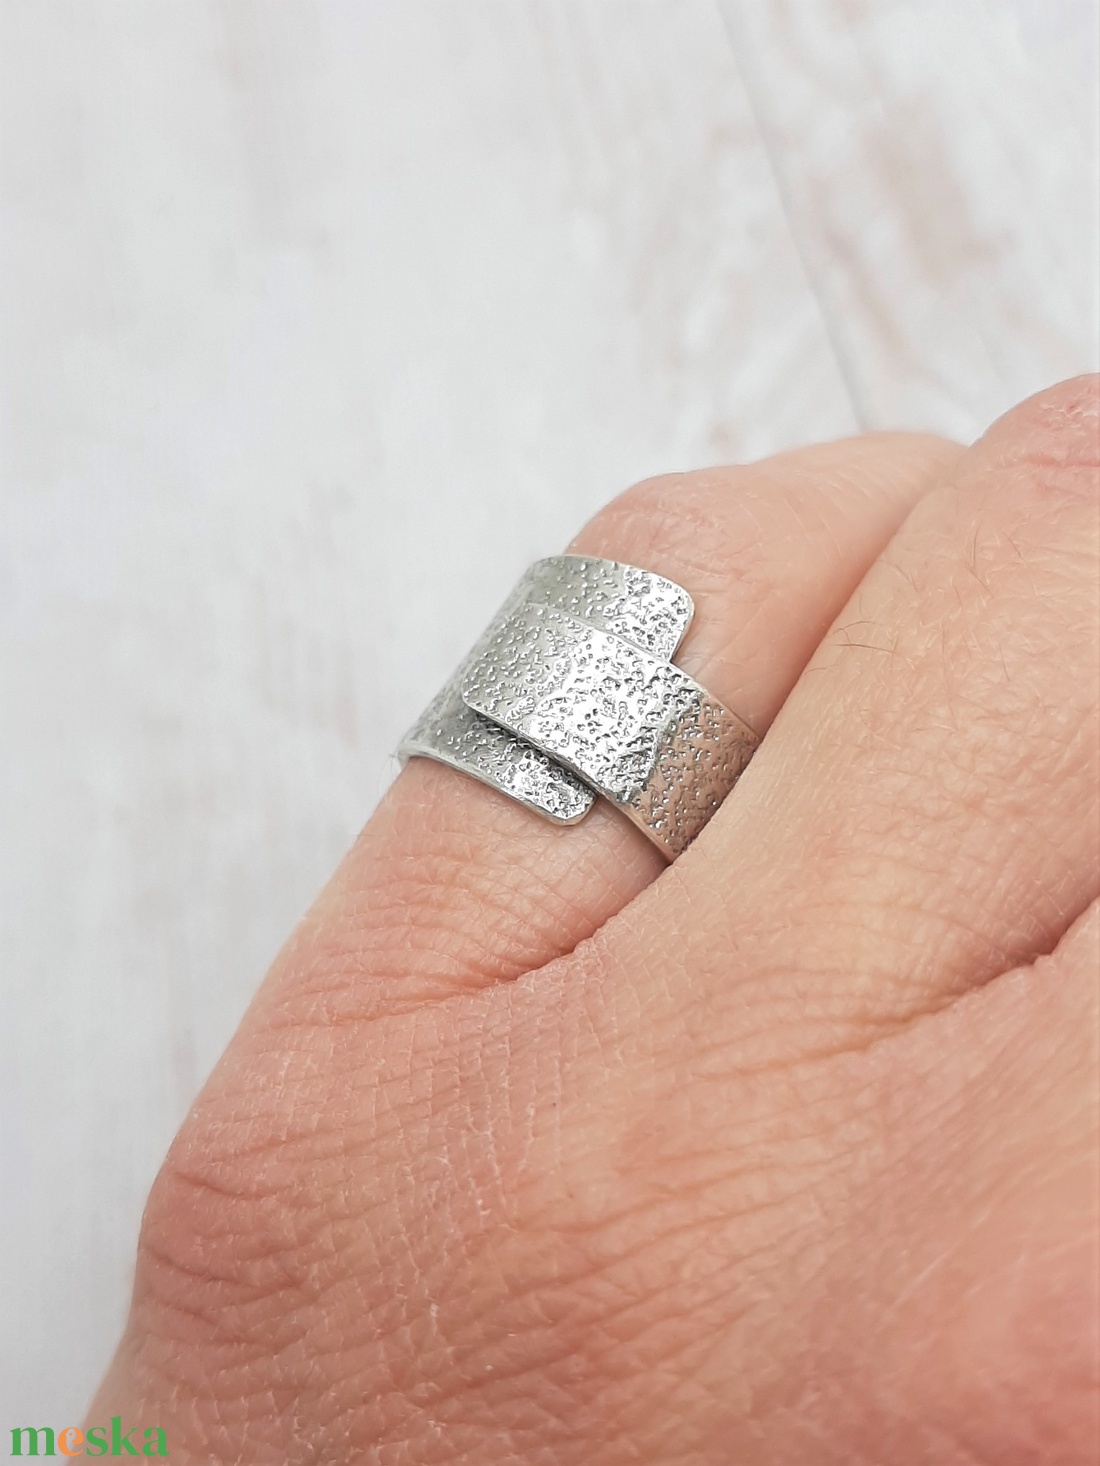 Rusztikus ezüst gyűrű  - ékszer - gyűrű - statement gyűrű - Meska.hu